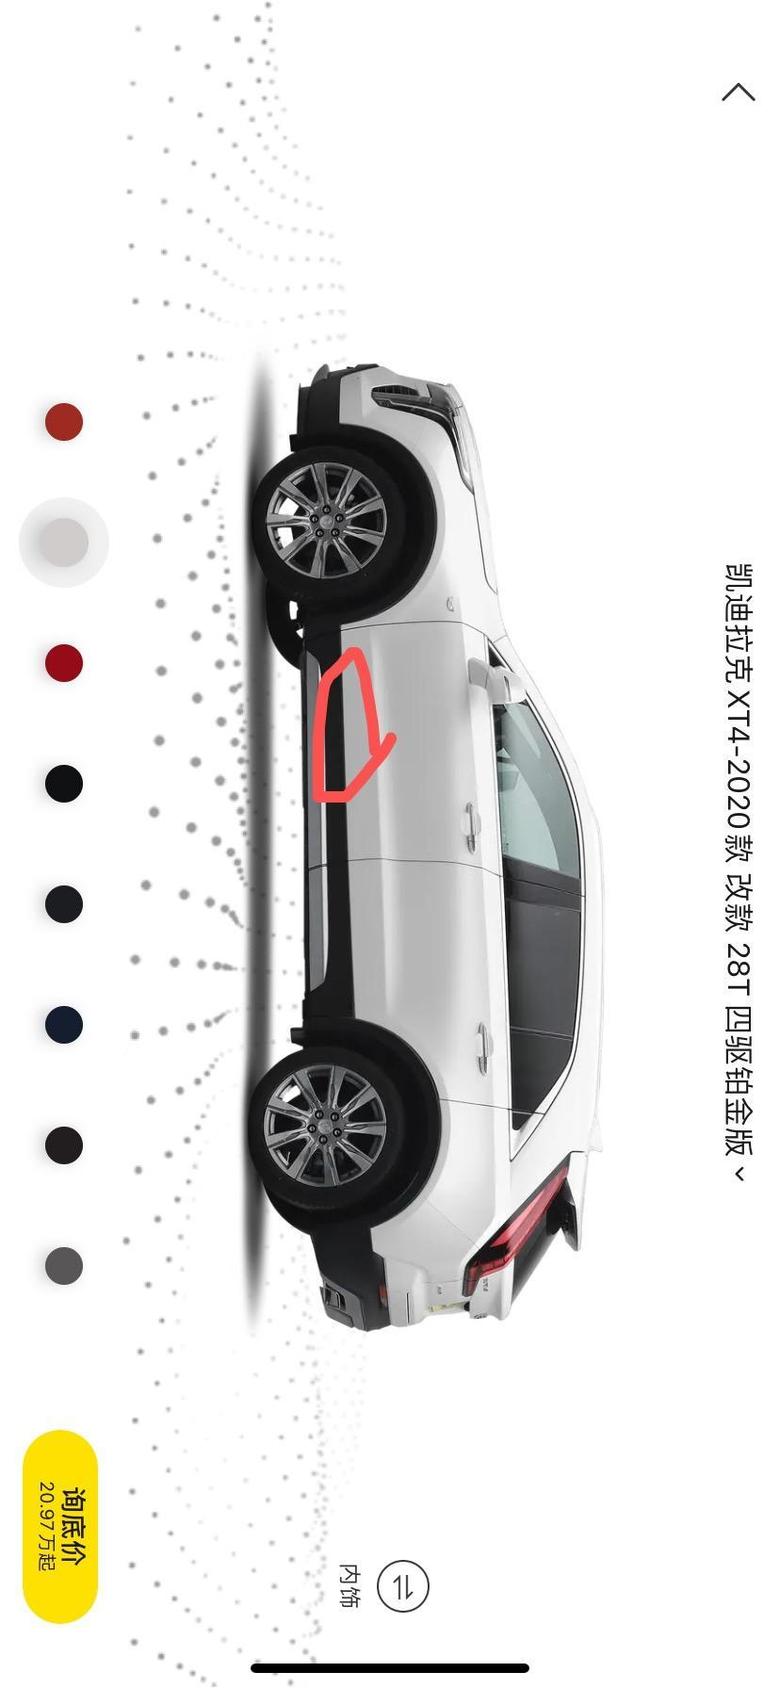 凯迪拉克xt4 黑色塑料包边和白色车身没有黏合上，有一点缝隙，是卡扣还是螺丝固定的？怎么黏合好，求助。